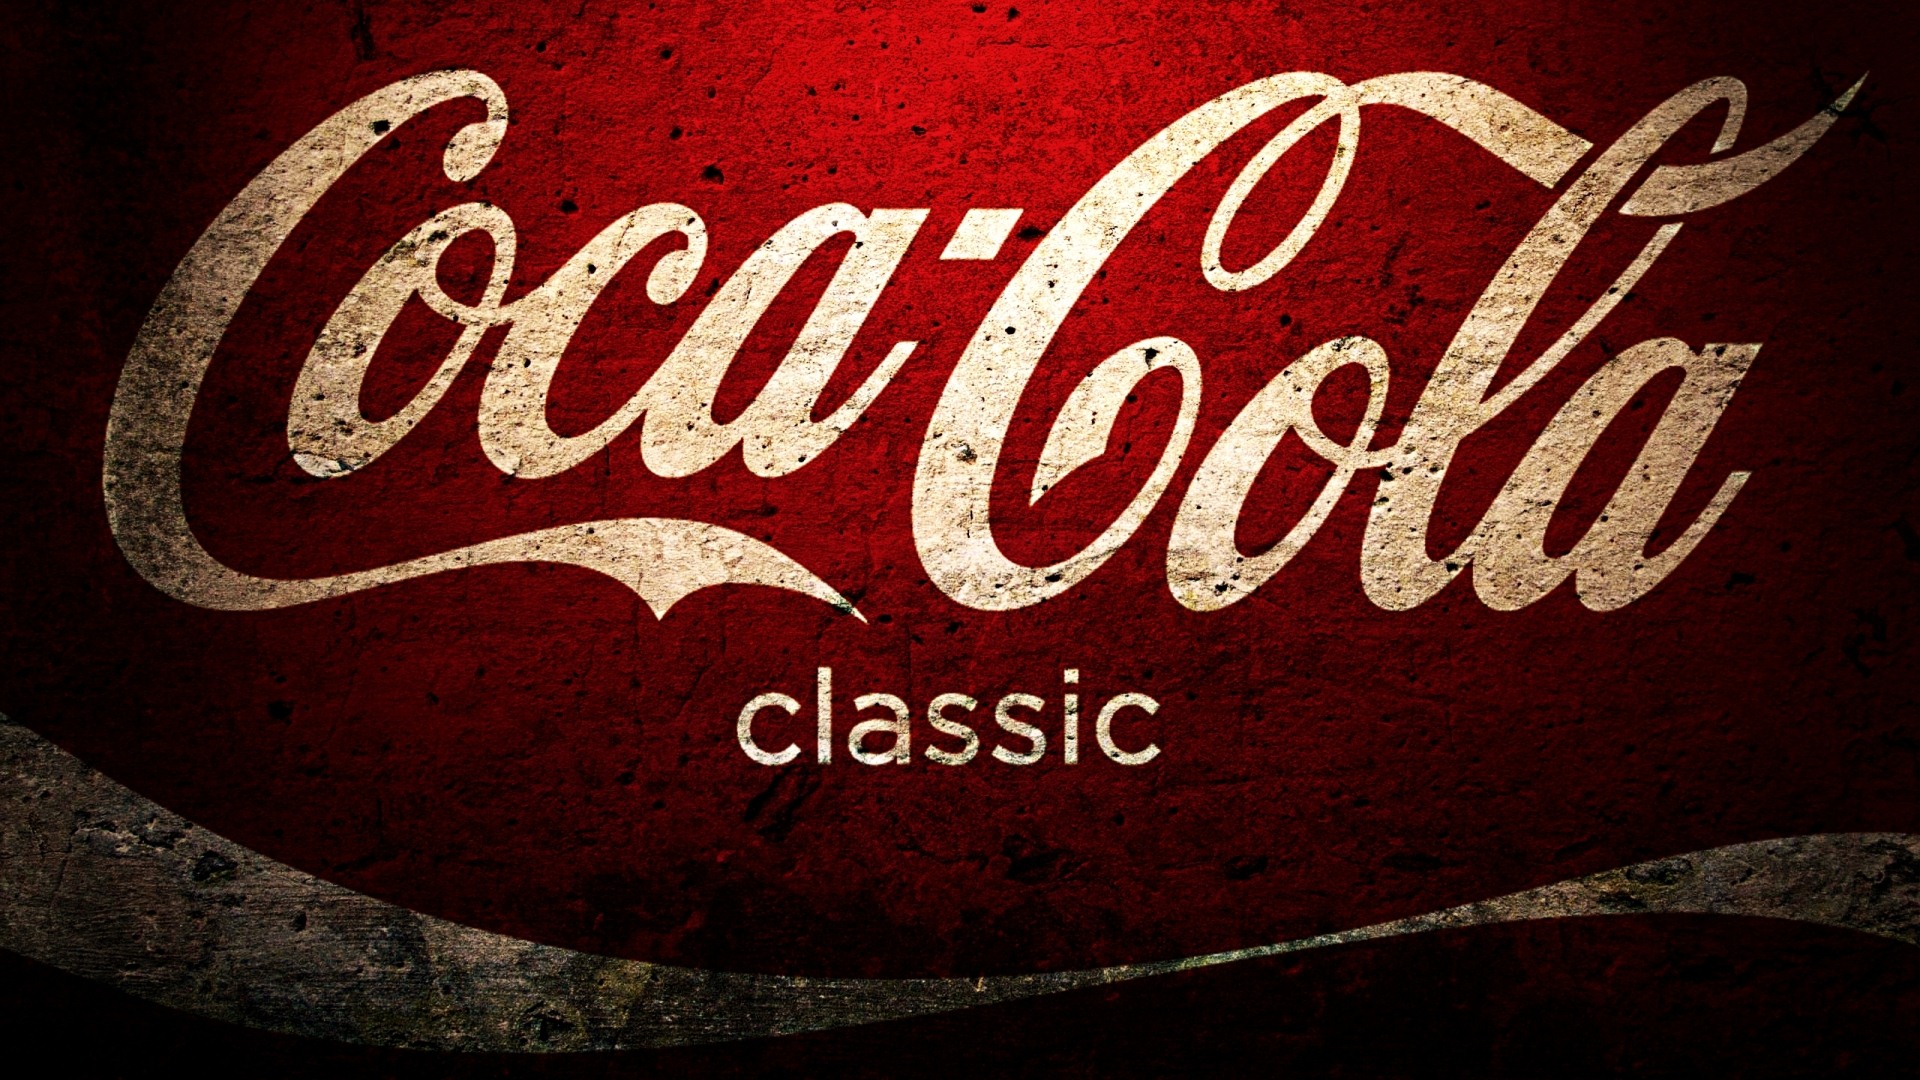 Coca-Cola schöne Ad Wallpaper #25 - 1920x1080